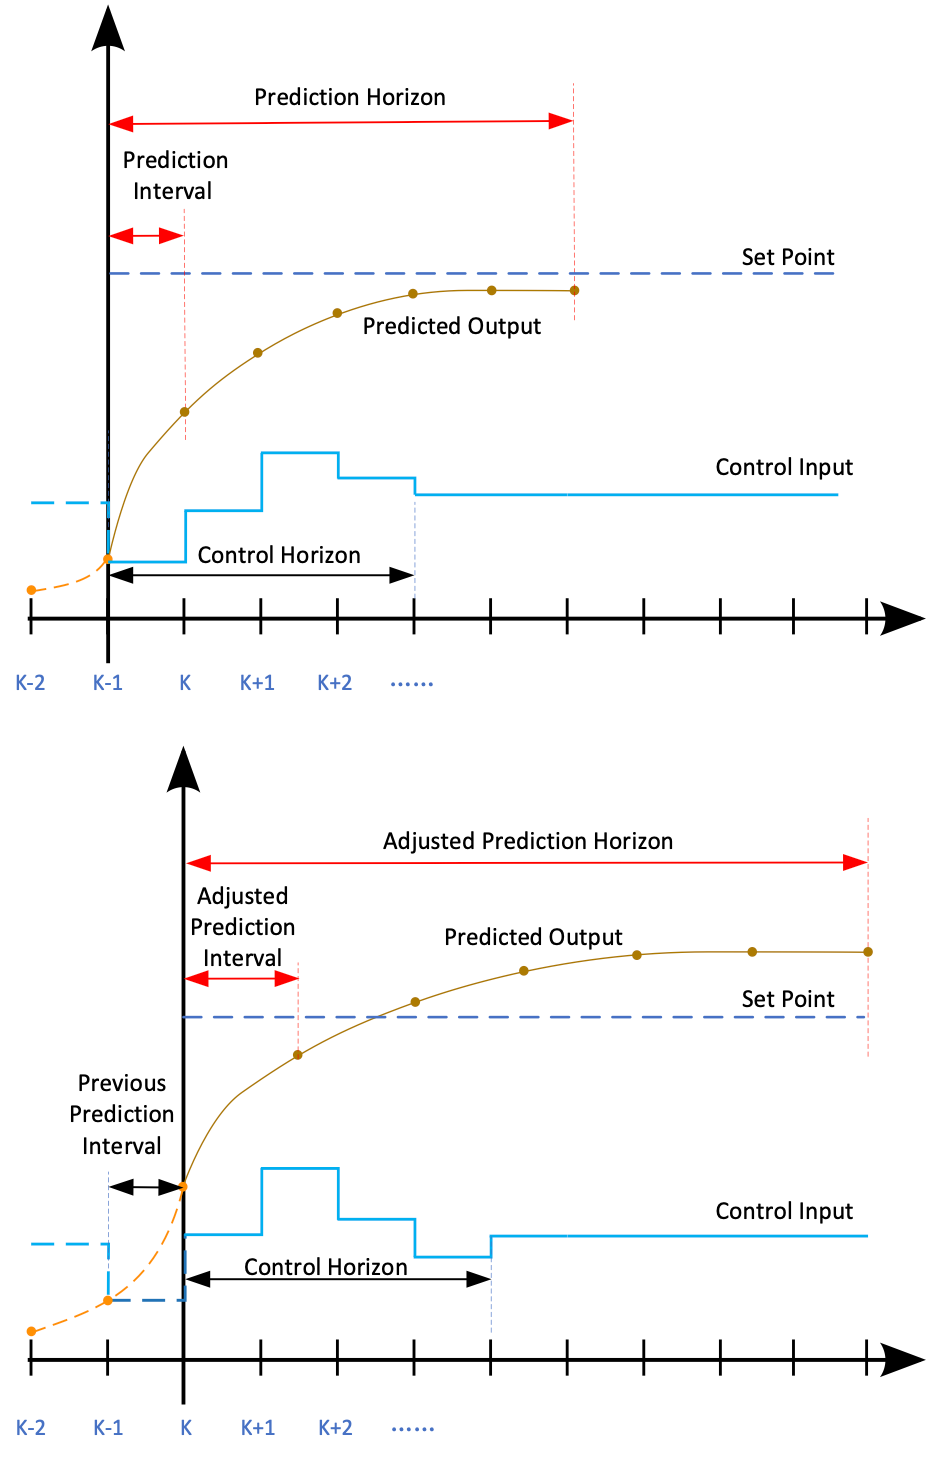 Prediction Horizon and Adjusted Prediction Horizons diagrams